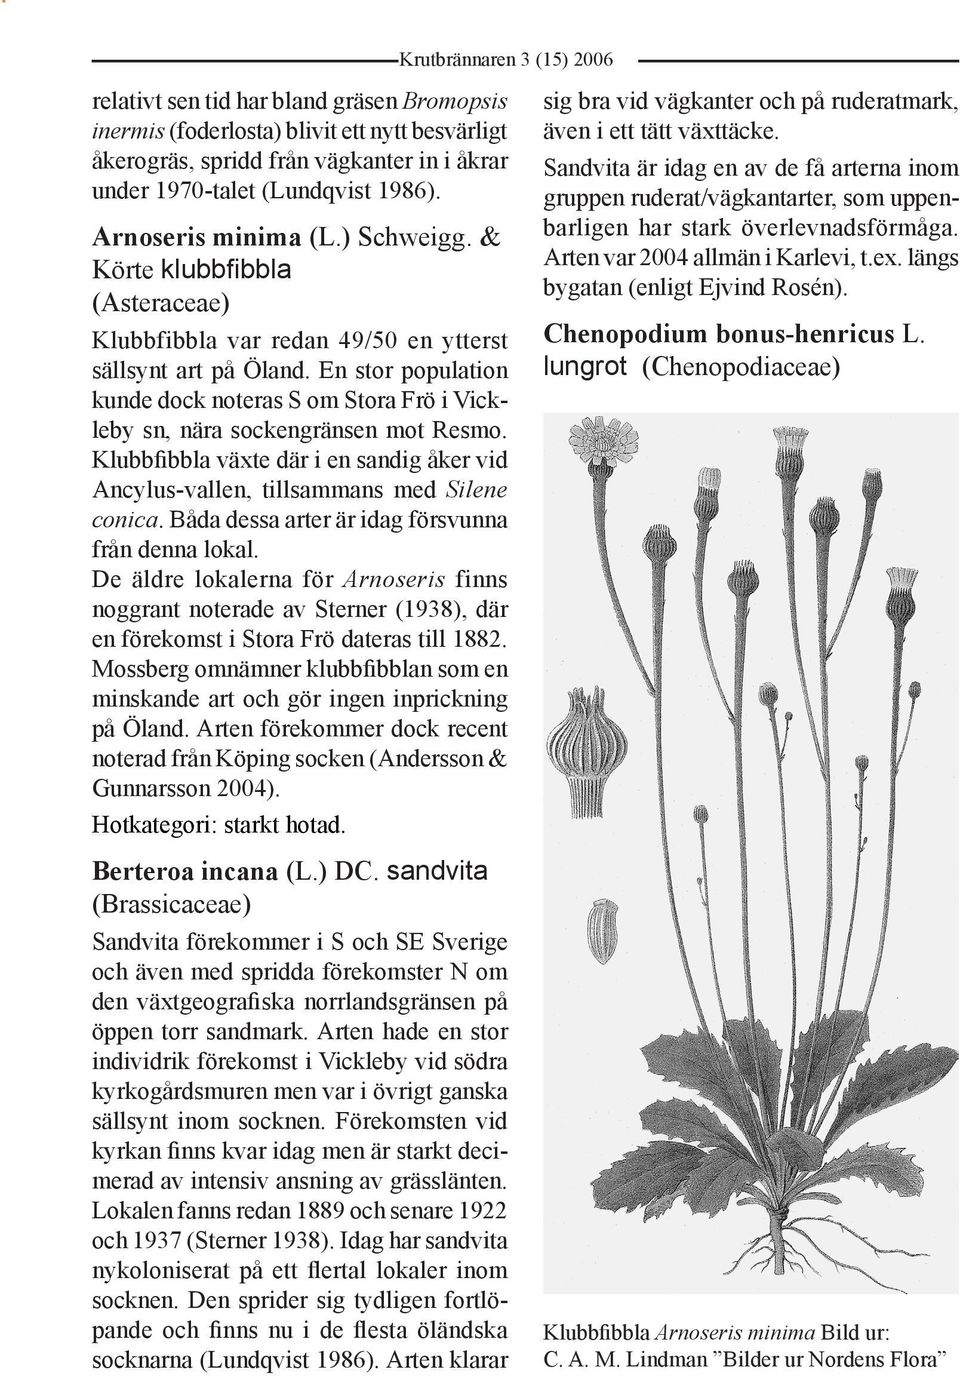 En stor population kunde dock noteras S om Stora Frö i Vickleby sn, nära sockengränsen mot Resmo. Klubbfibbla växte där i en sandig åker vid Ancylus-vallen, tillsammans med Silene conica.